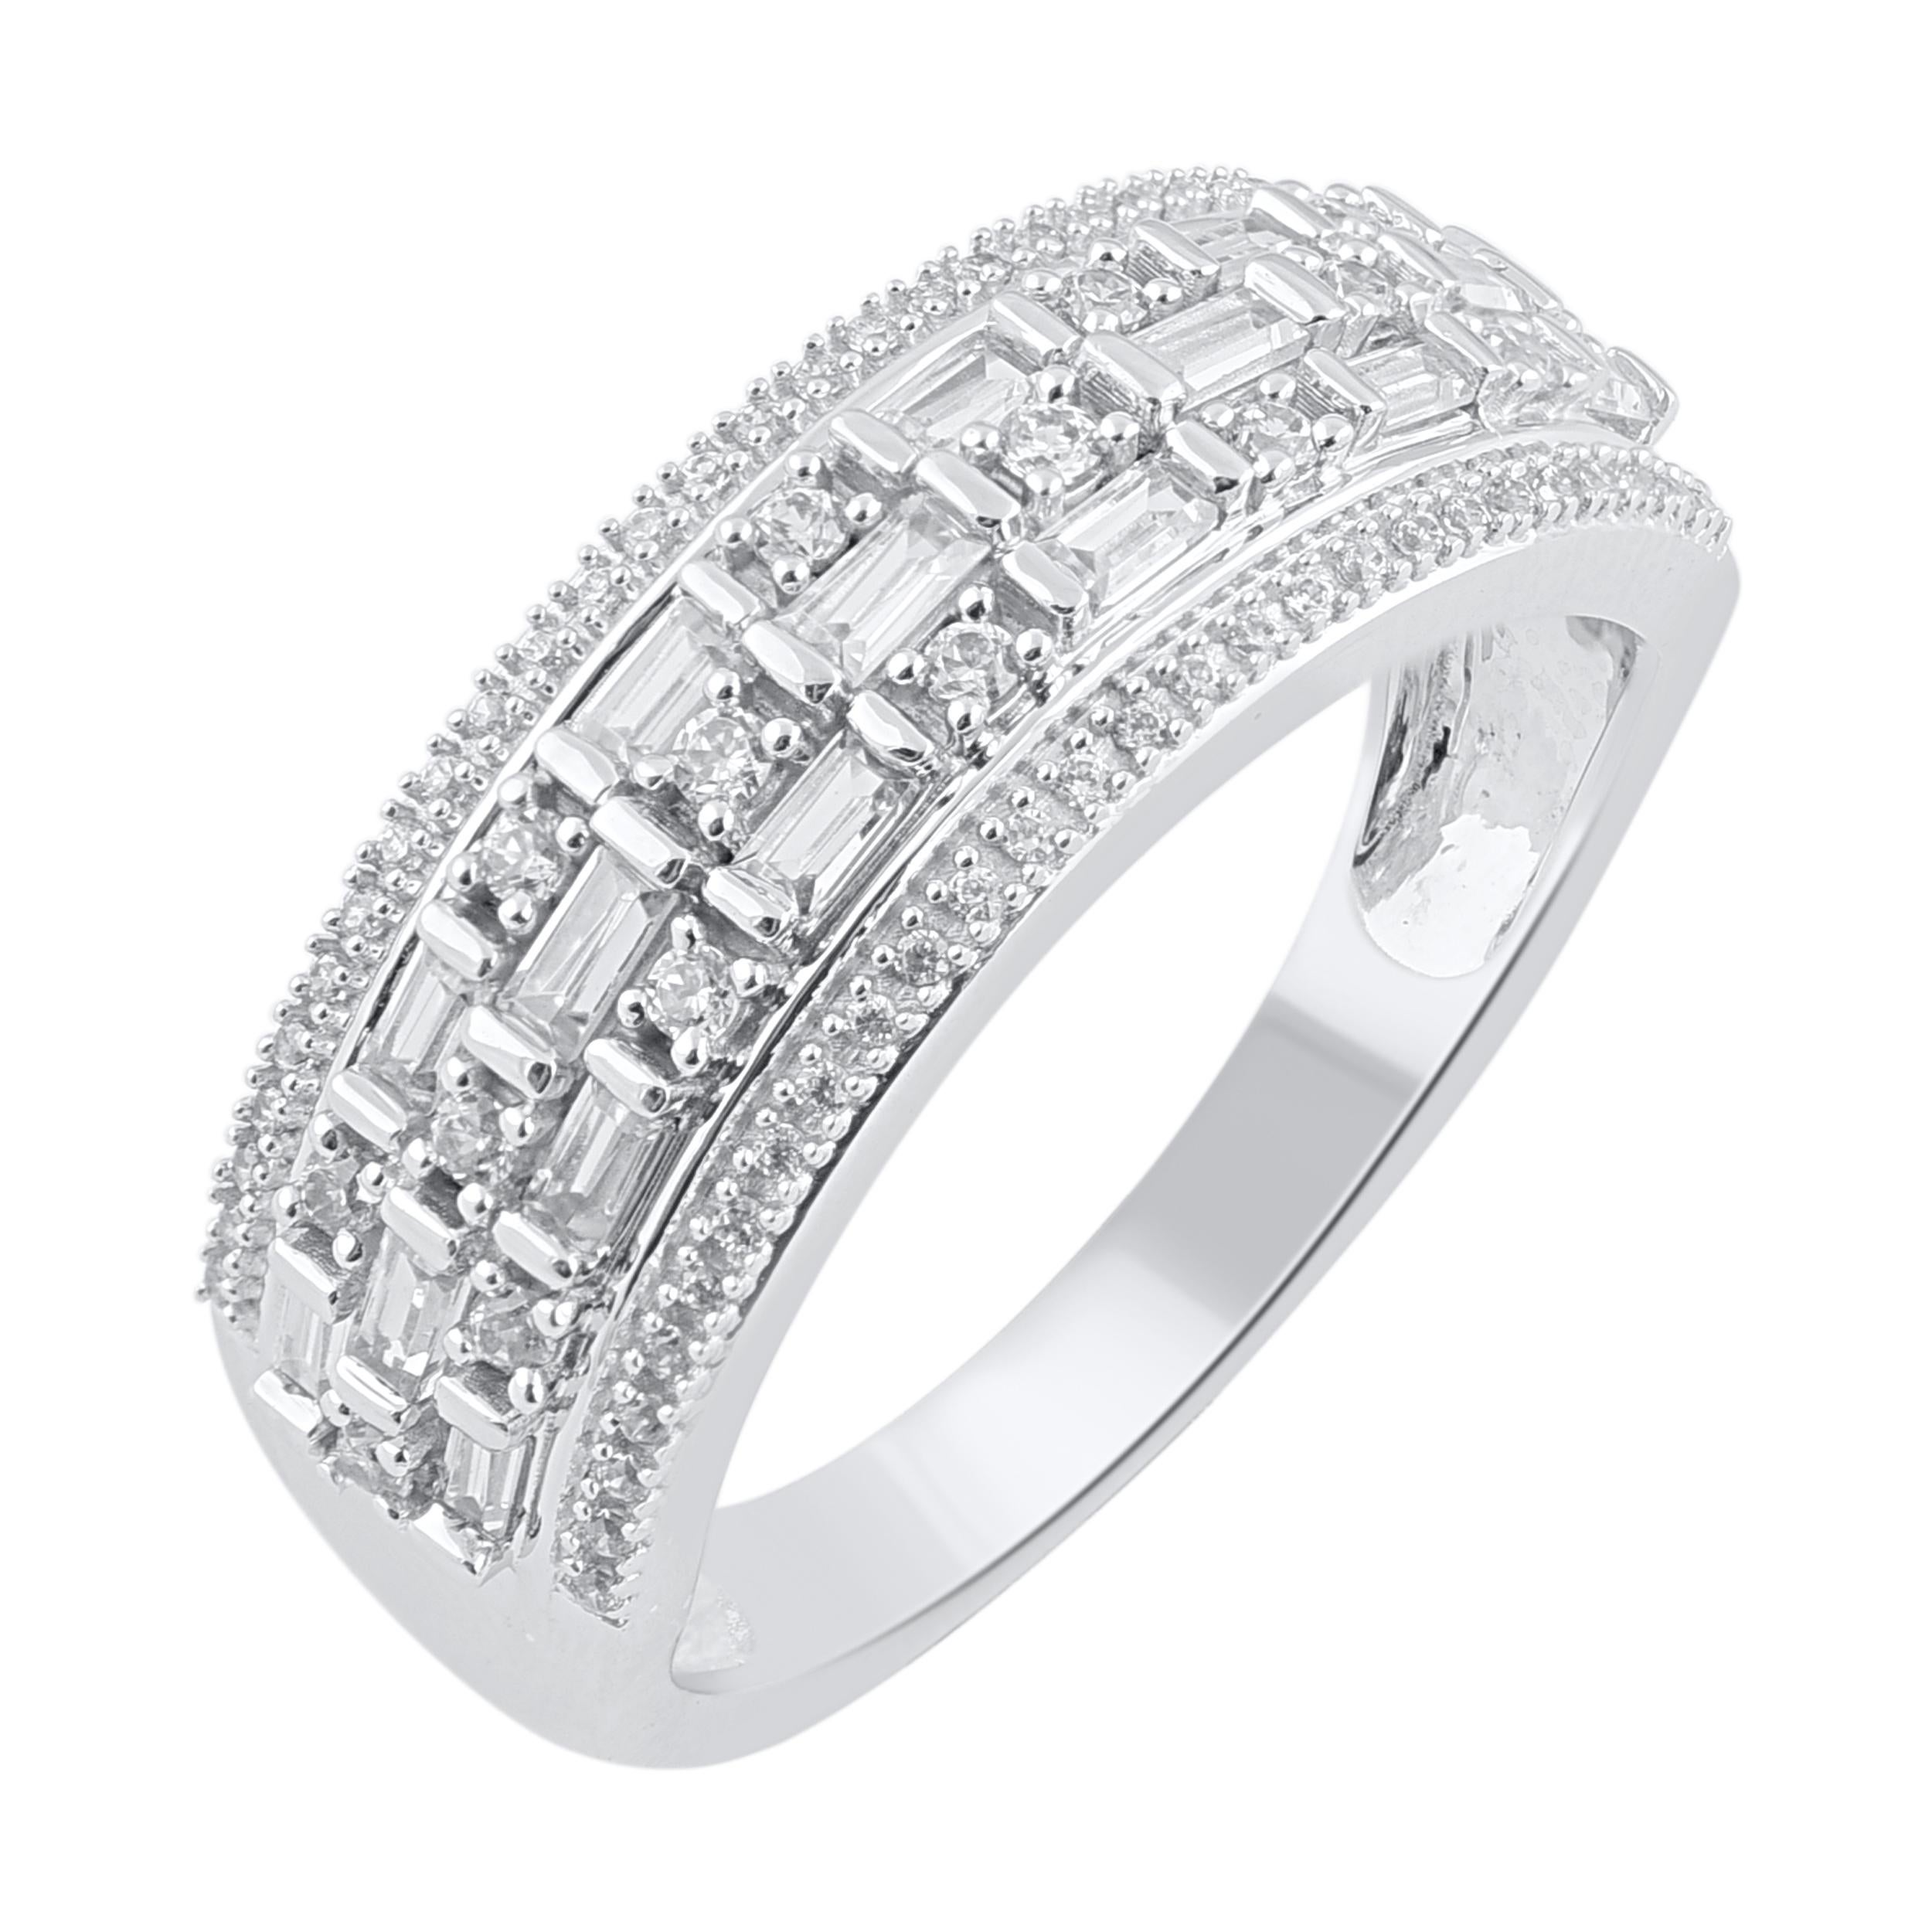 Machen Sie diesen besonderen Moment magisch mit dem exquisiten Diamant-Verlobungsring. Dieser Ring ist wunderschön aus 14 Karat Weißgold gefertigt und mit 87 runden Diamanten im Brillant- und Baguetteschliff in Zacken- und Kanalfassung besetzt. Das